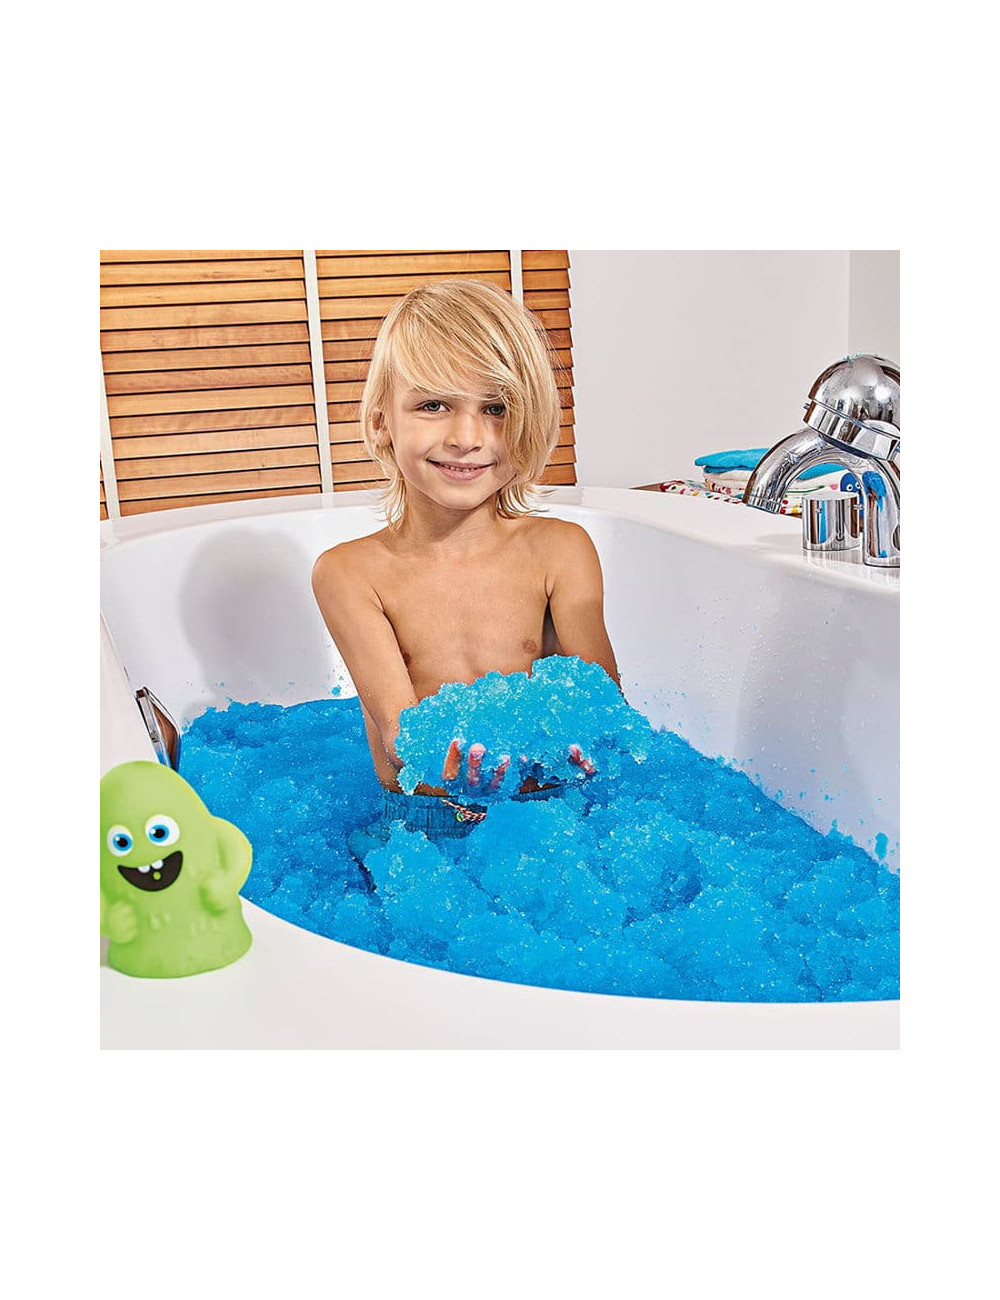 Magiczny proszek do kąpieli Gelli Baff Glitter fioletowy i błękitny, Zimpli Kids